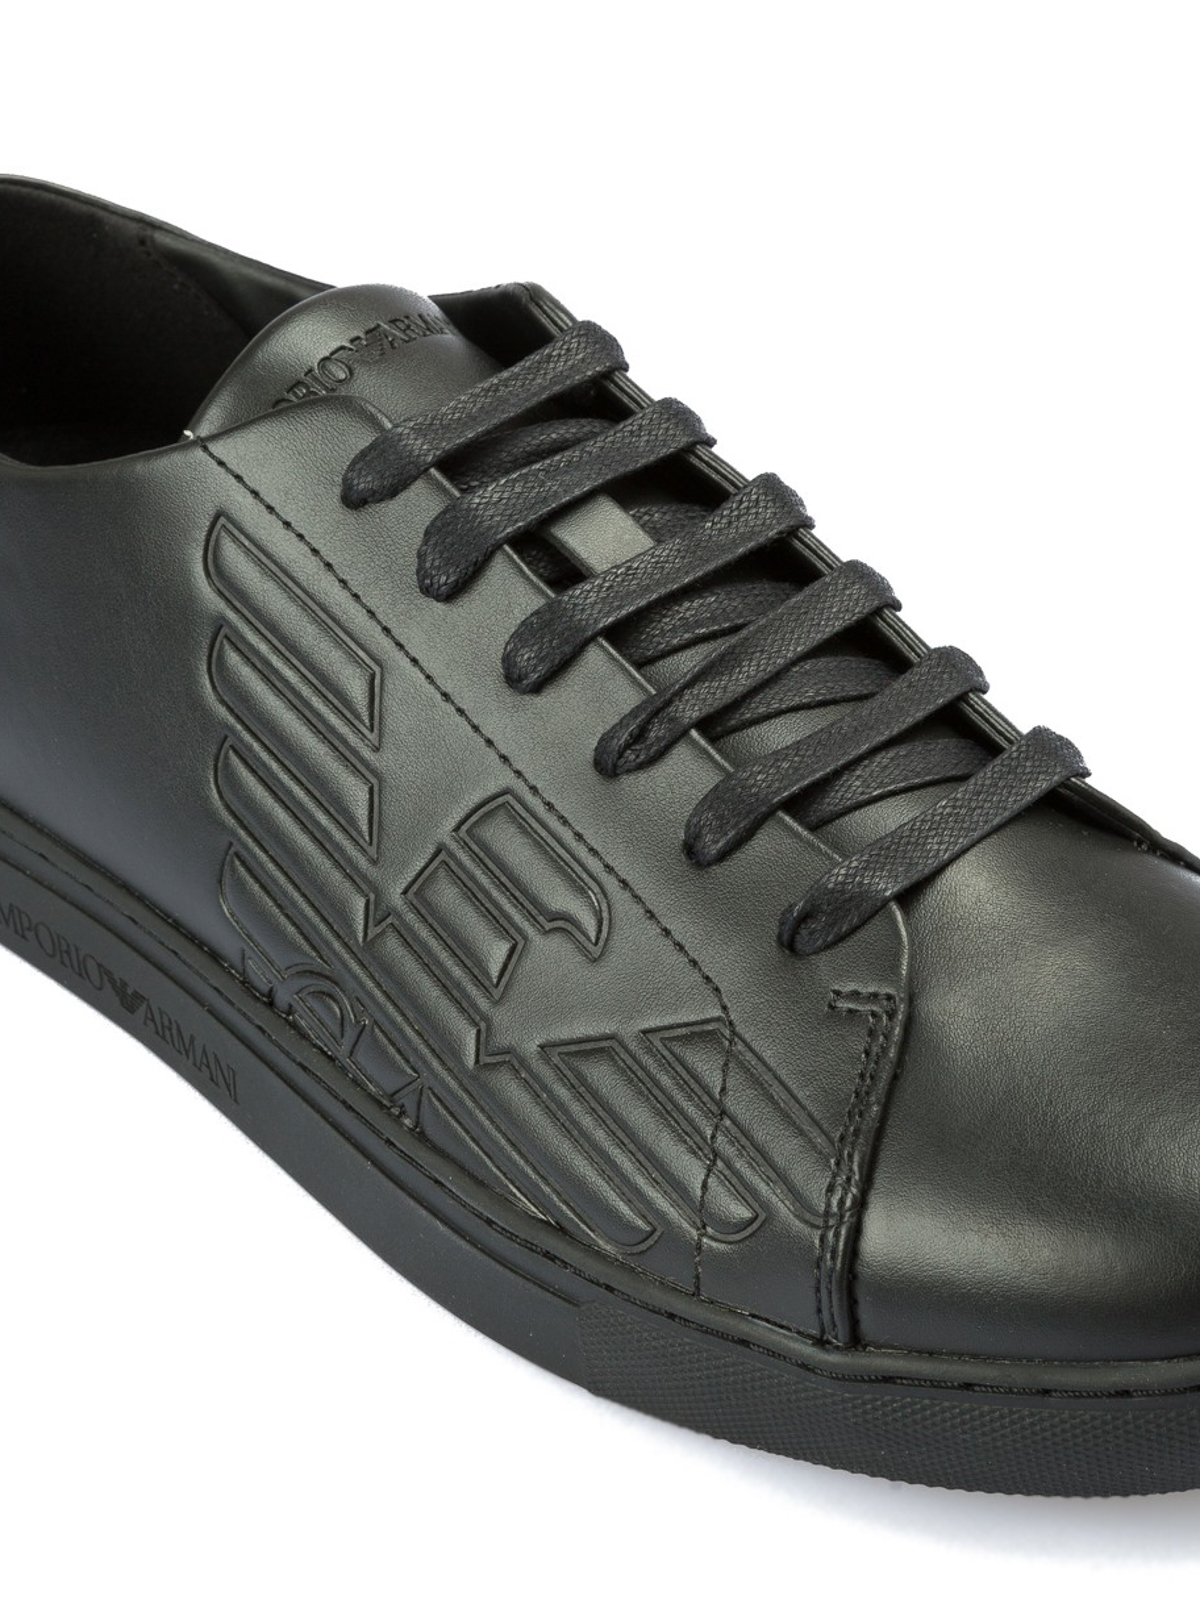 armani leather shoes